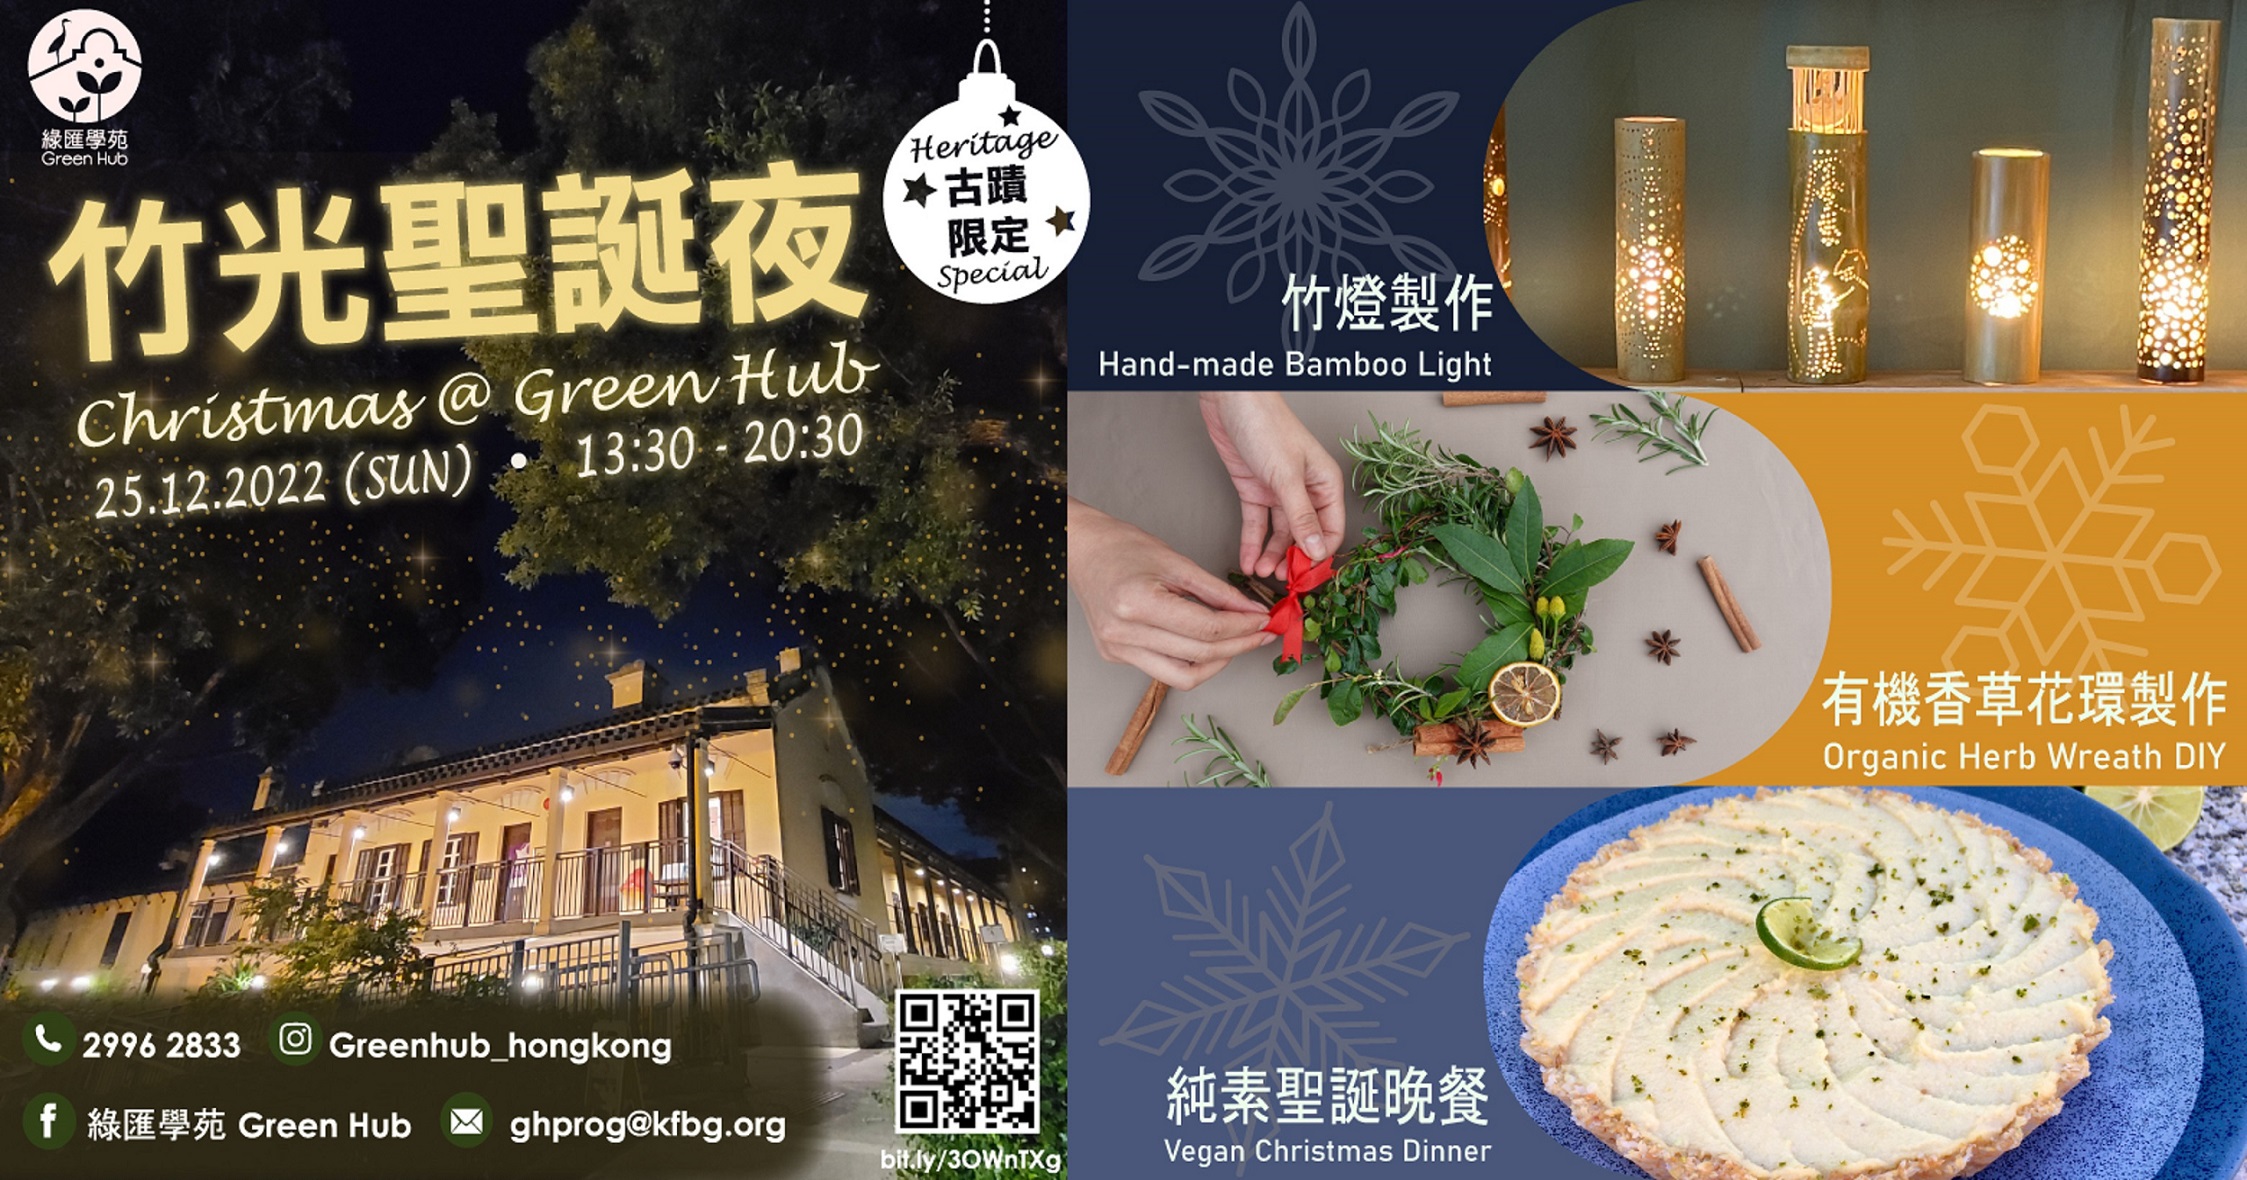 Christmas @ Green Hub